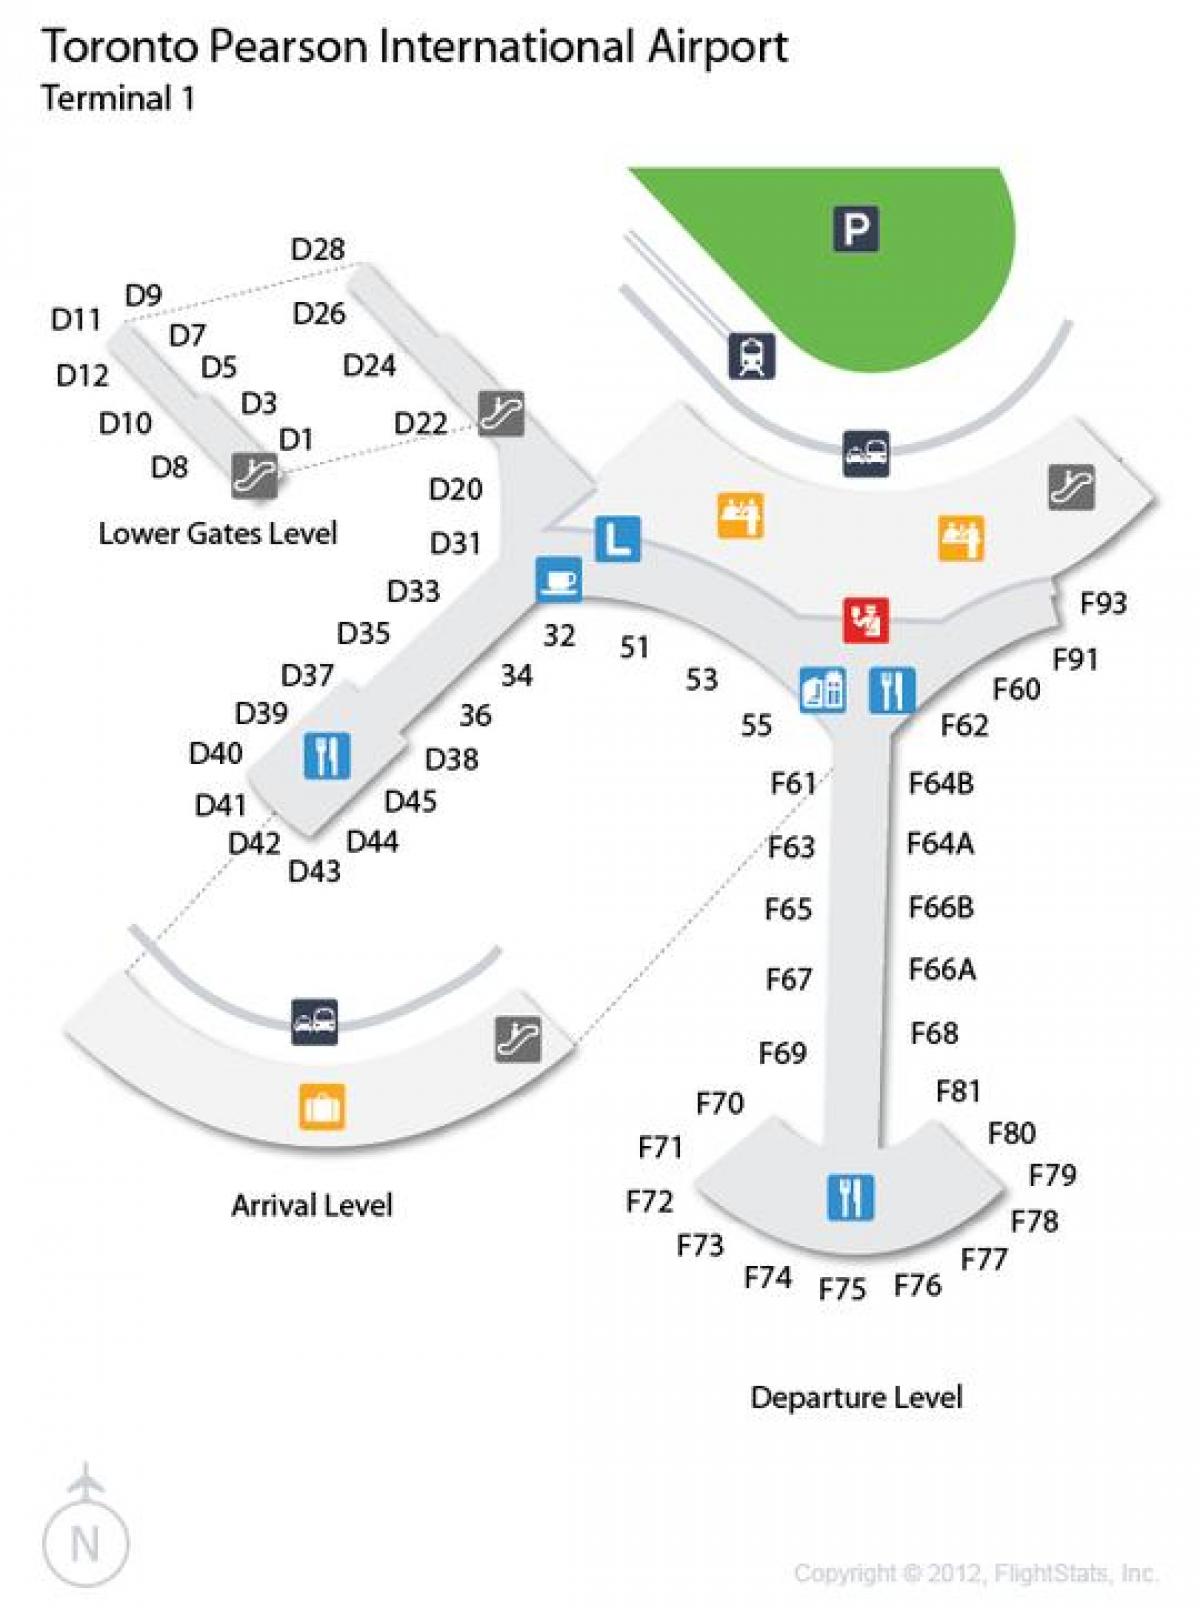 Zemljevid Torontu Pearson letališču prihoda in odhoda ravni